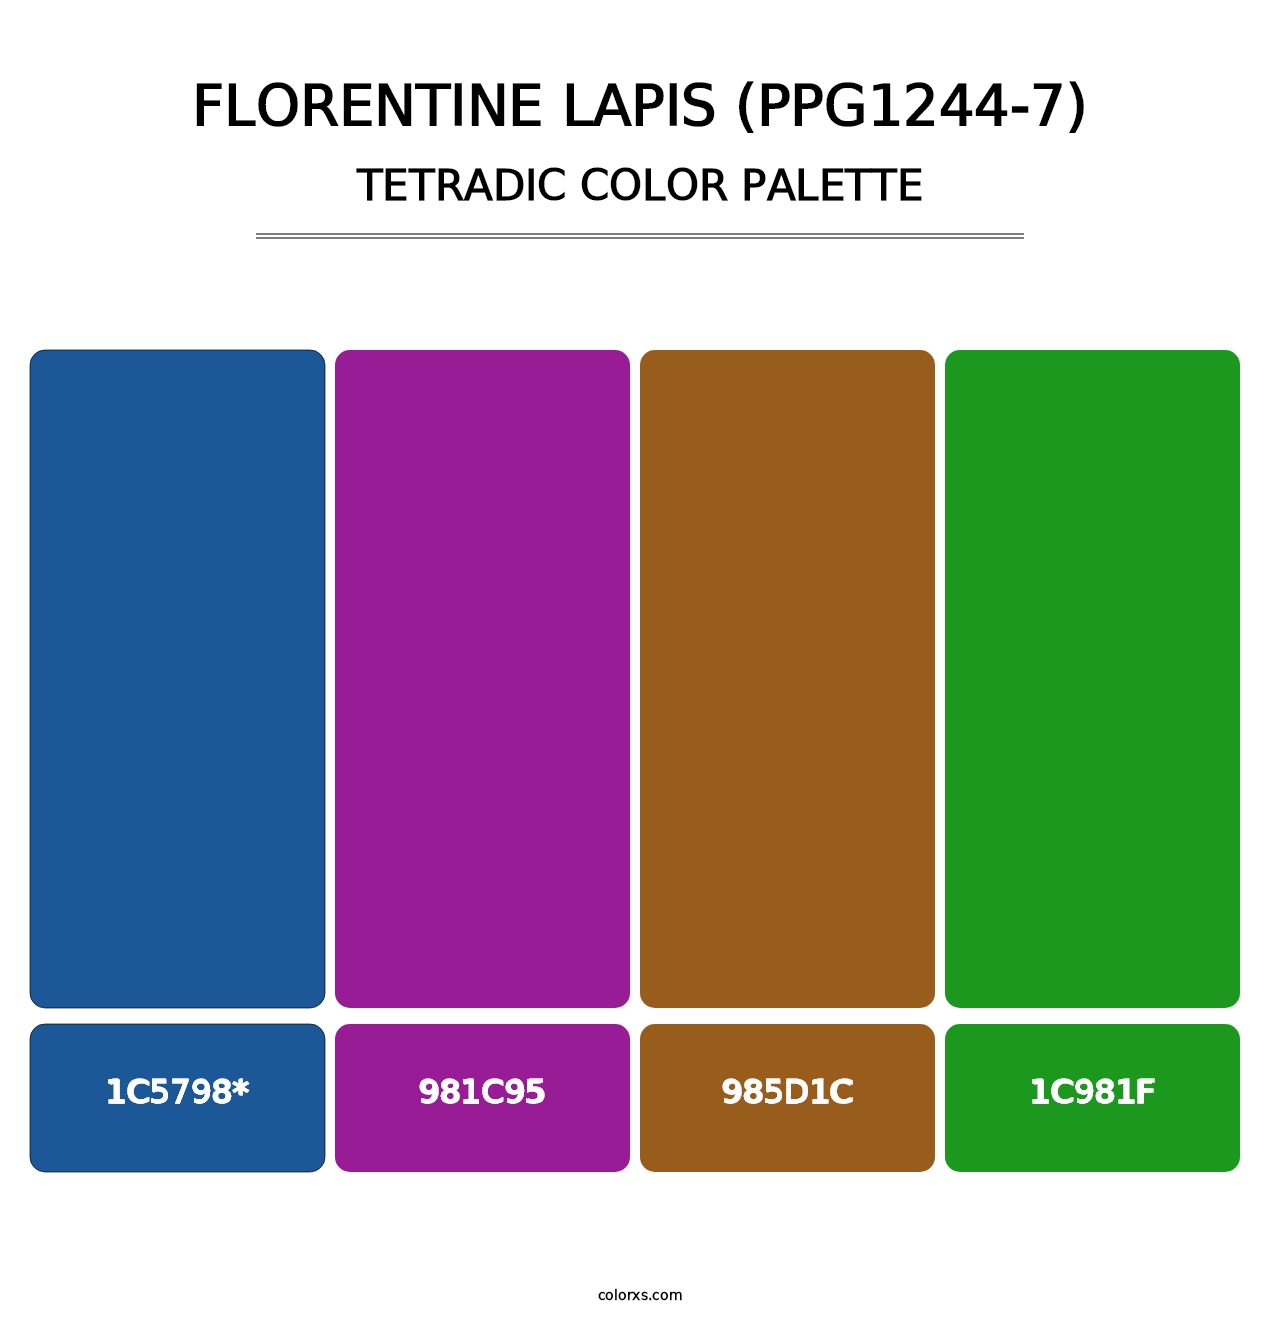 Florentine Lapis (PPG1244-7) - Tetradic Color Palette